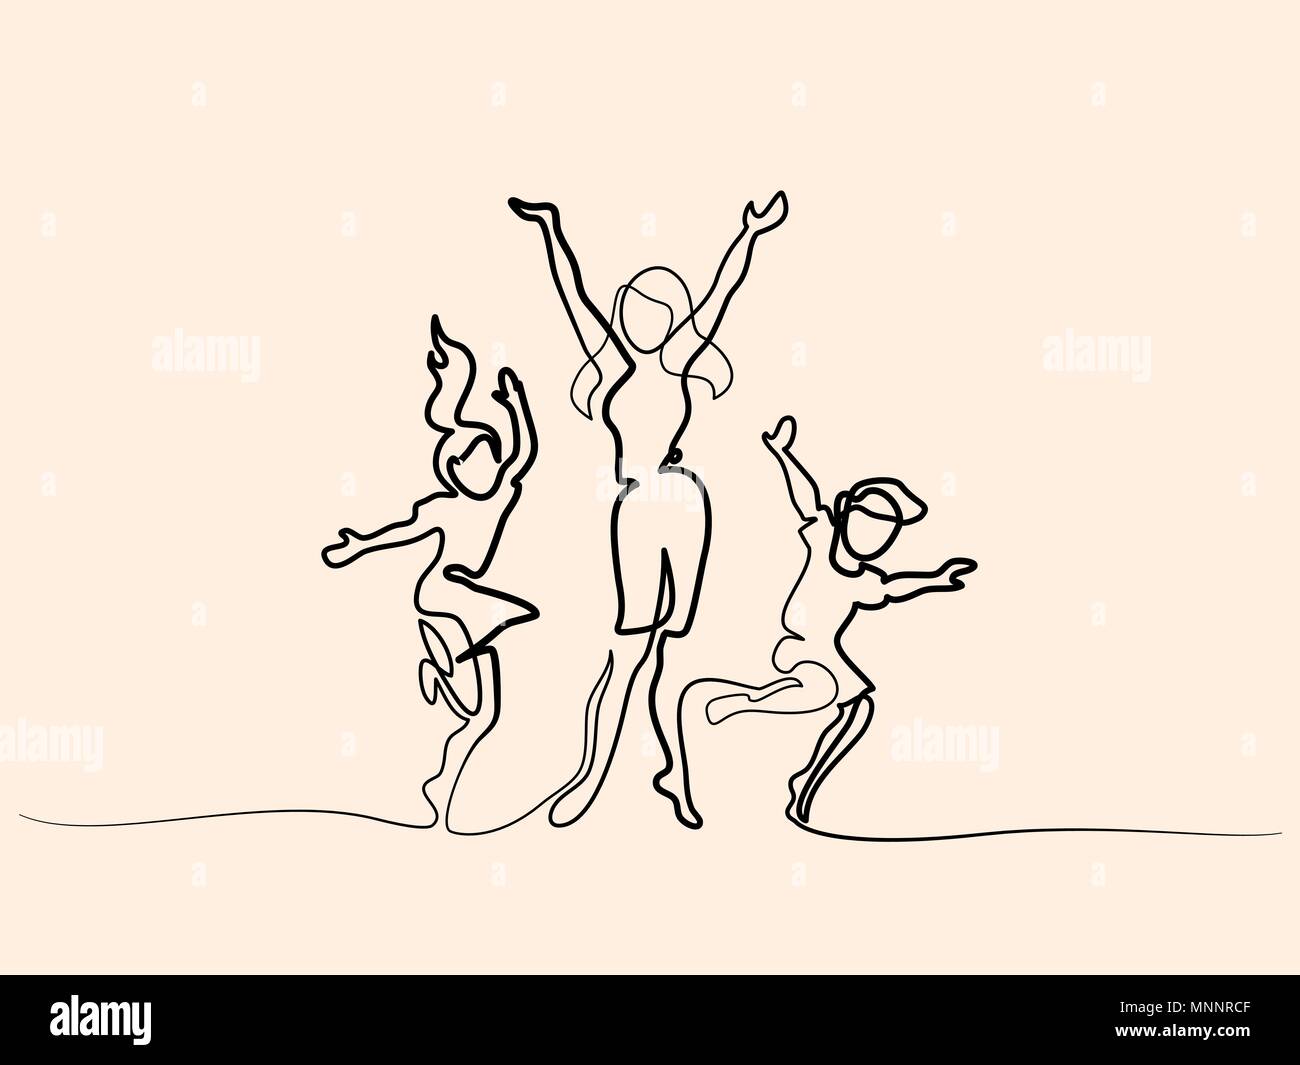 Heureuse fête danse avec les enfants Illustration de Vecteur